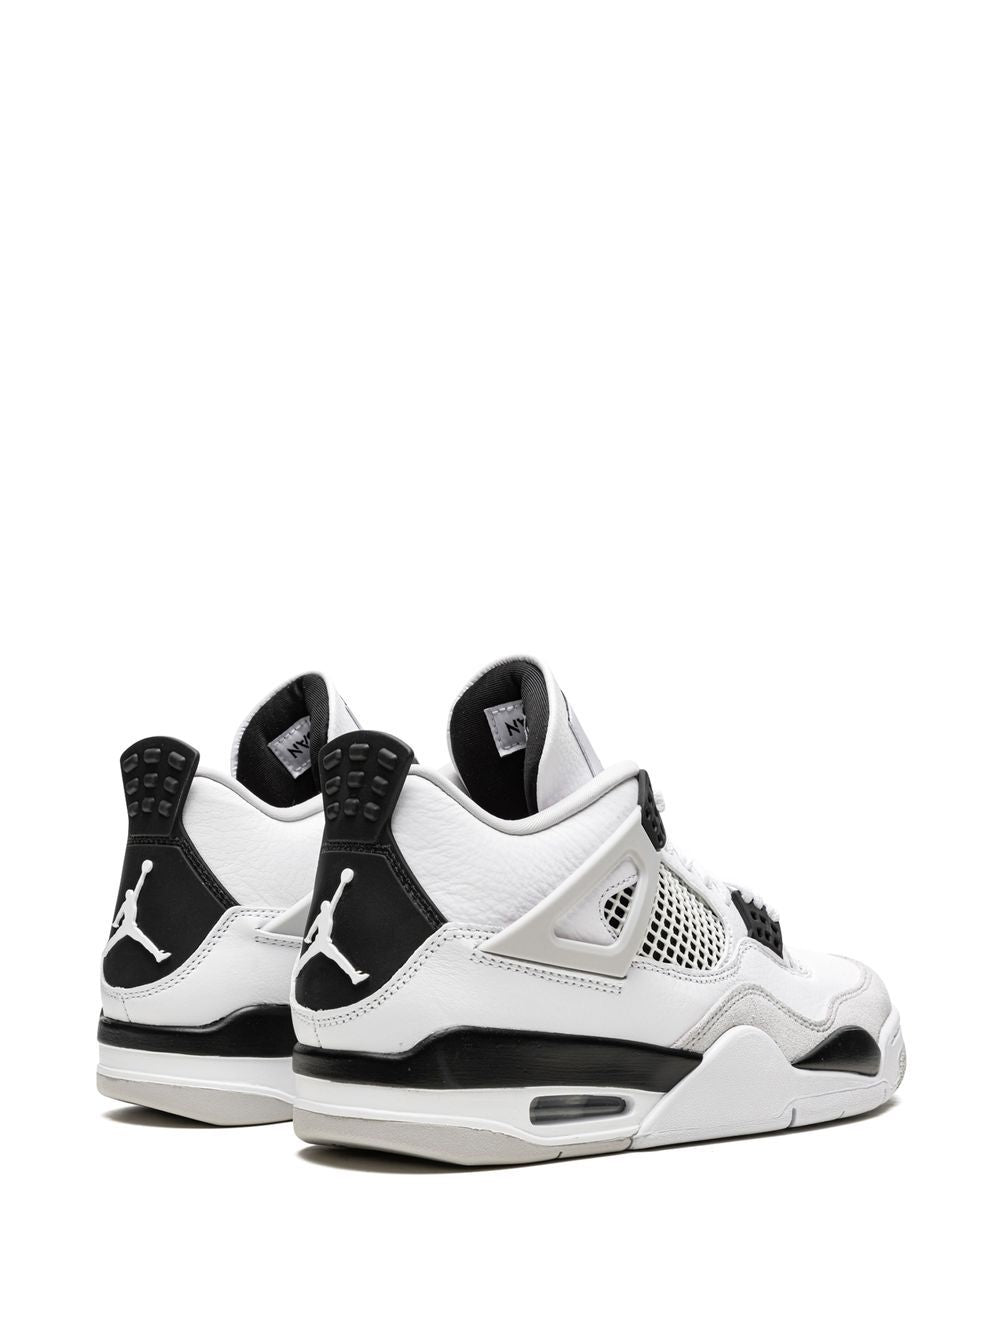 Nike Jordan 4 Black Military